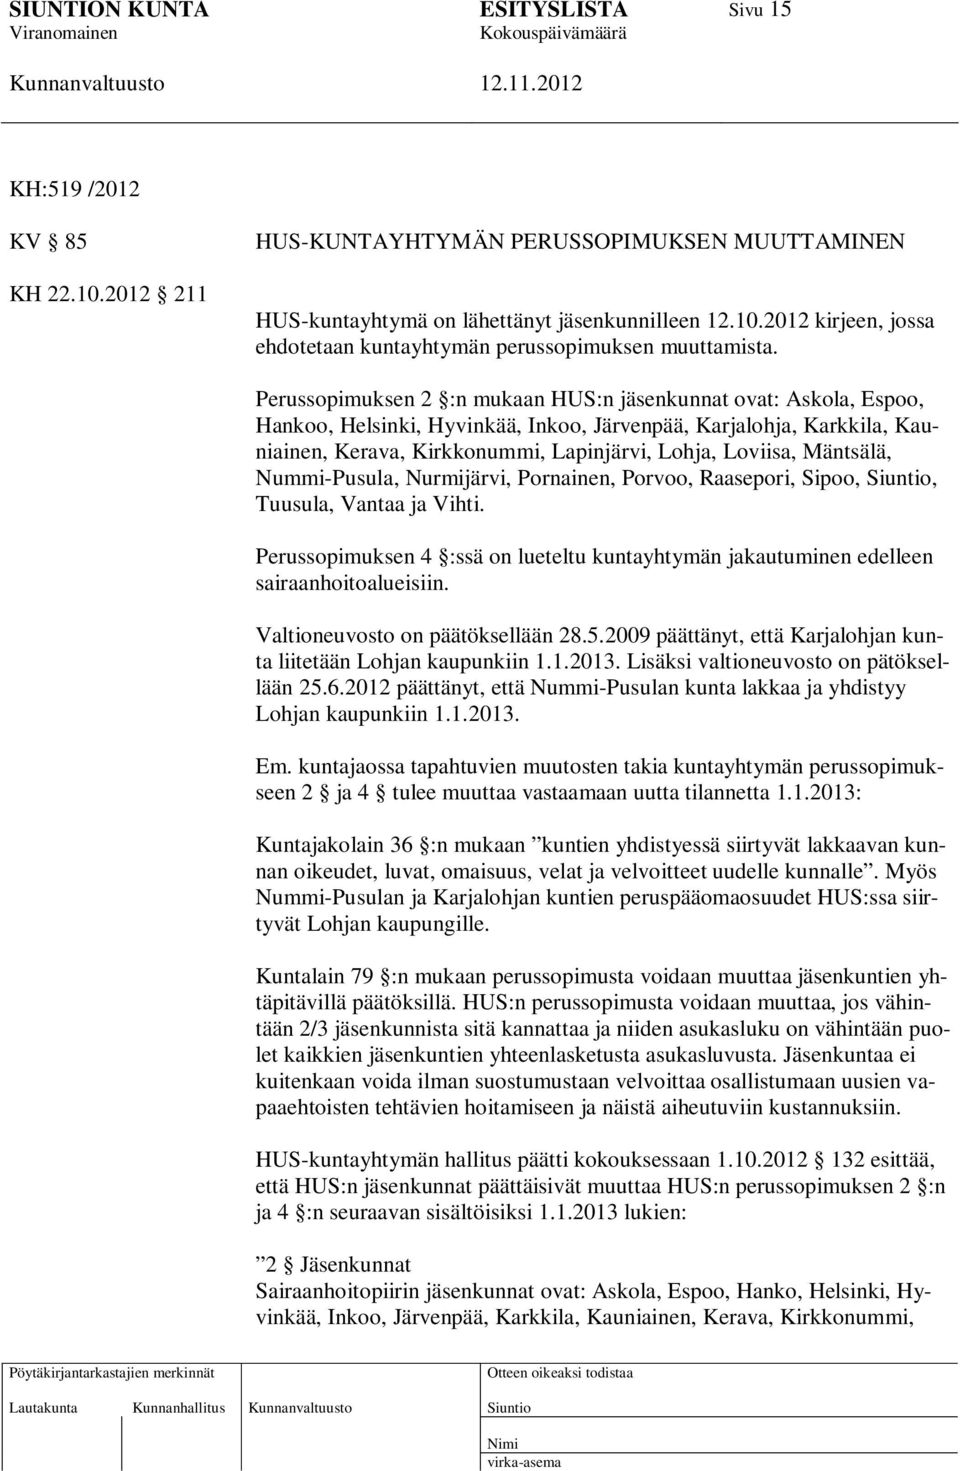 Mäntsälä, Nummi-Pusula, Nurmijärvi, Pornainen, Porvoo, Raasepori, Sipoo,, Tuusula, Vantaa ja Vihti. Perussopimuksen 4 :ssä on lueteltu kuntayhtymän jakautuminen edelleen sairaanhoitoalueisiin.